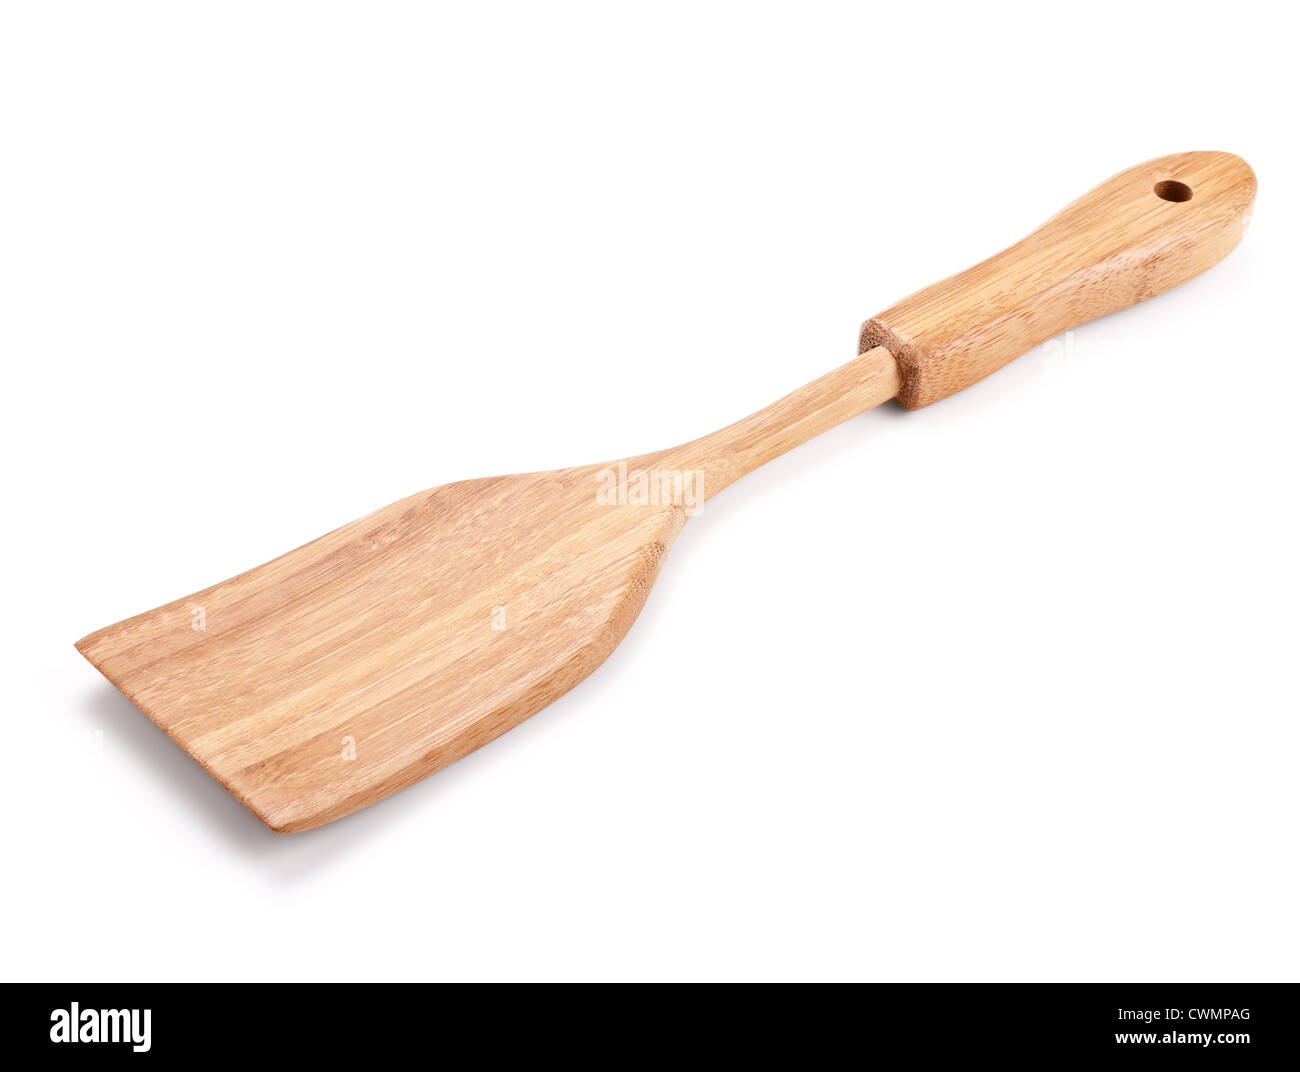 Bamboo spatula isolated on white background Stock Photo